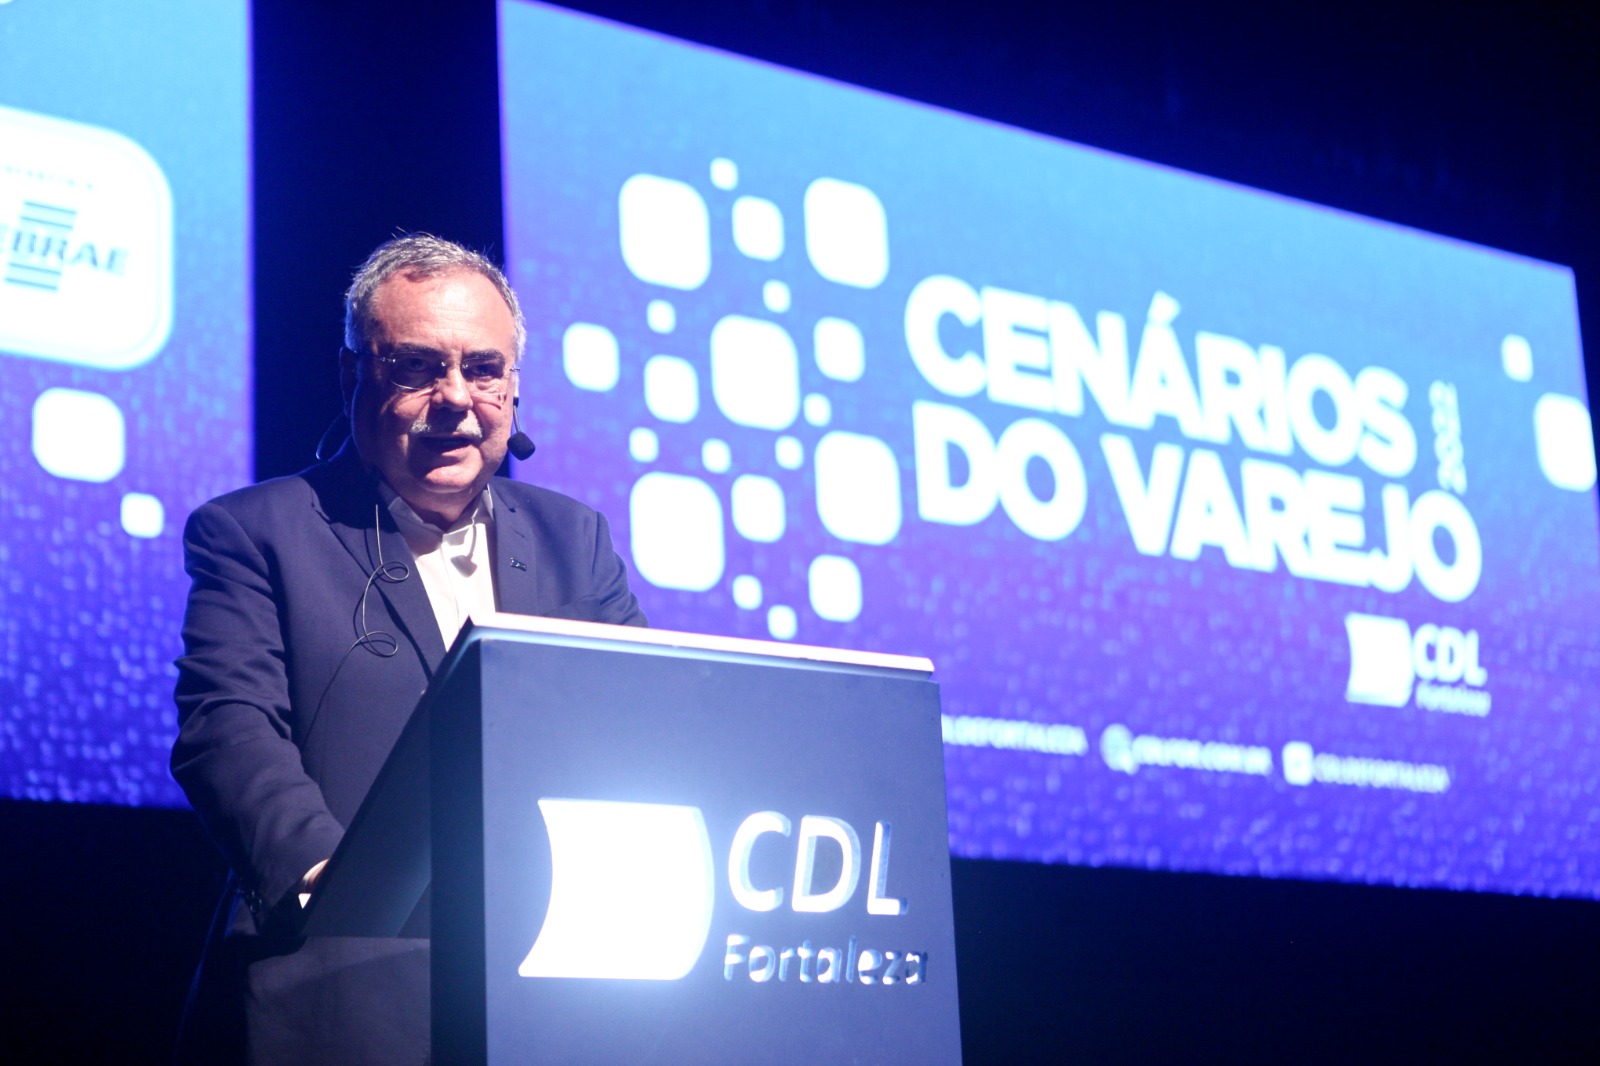 Presidente da CDL de Fortaleza, Assis Cavalcante participa da NRF Big Show, em Nova Iorque